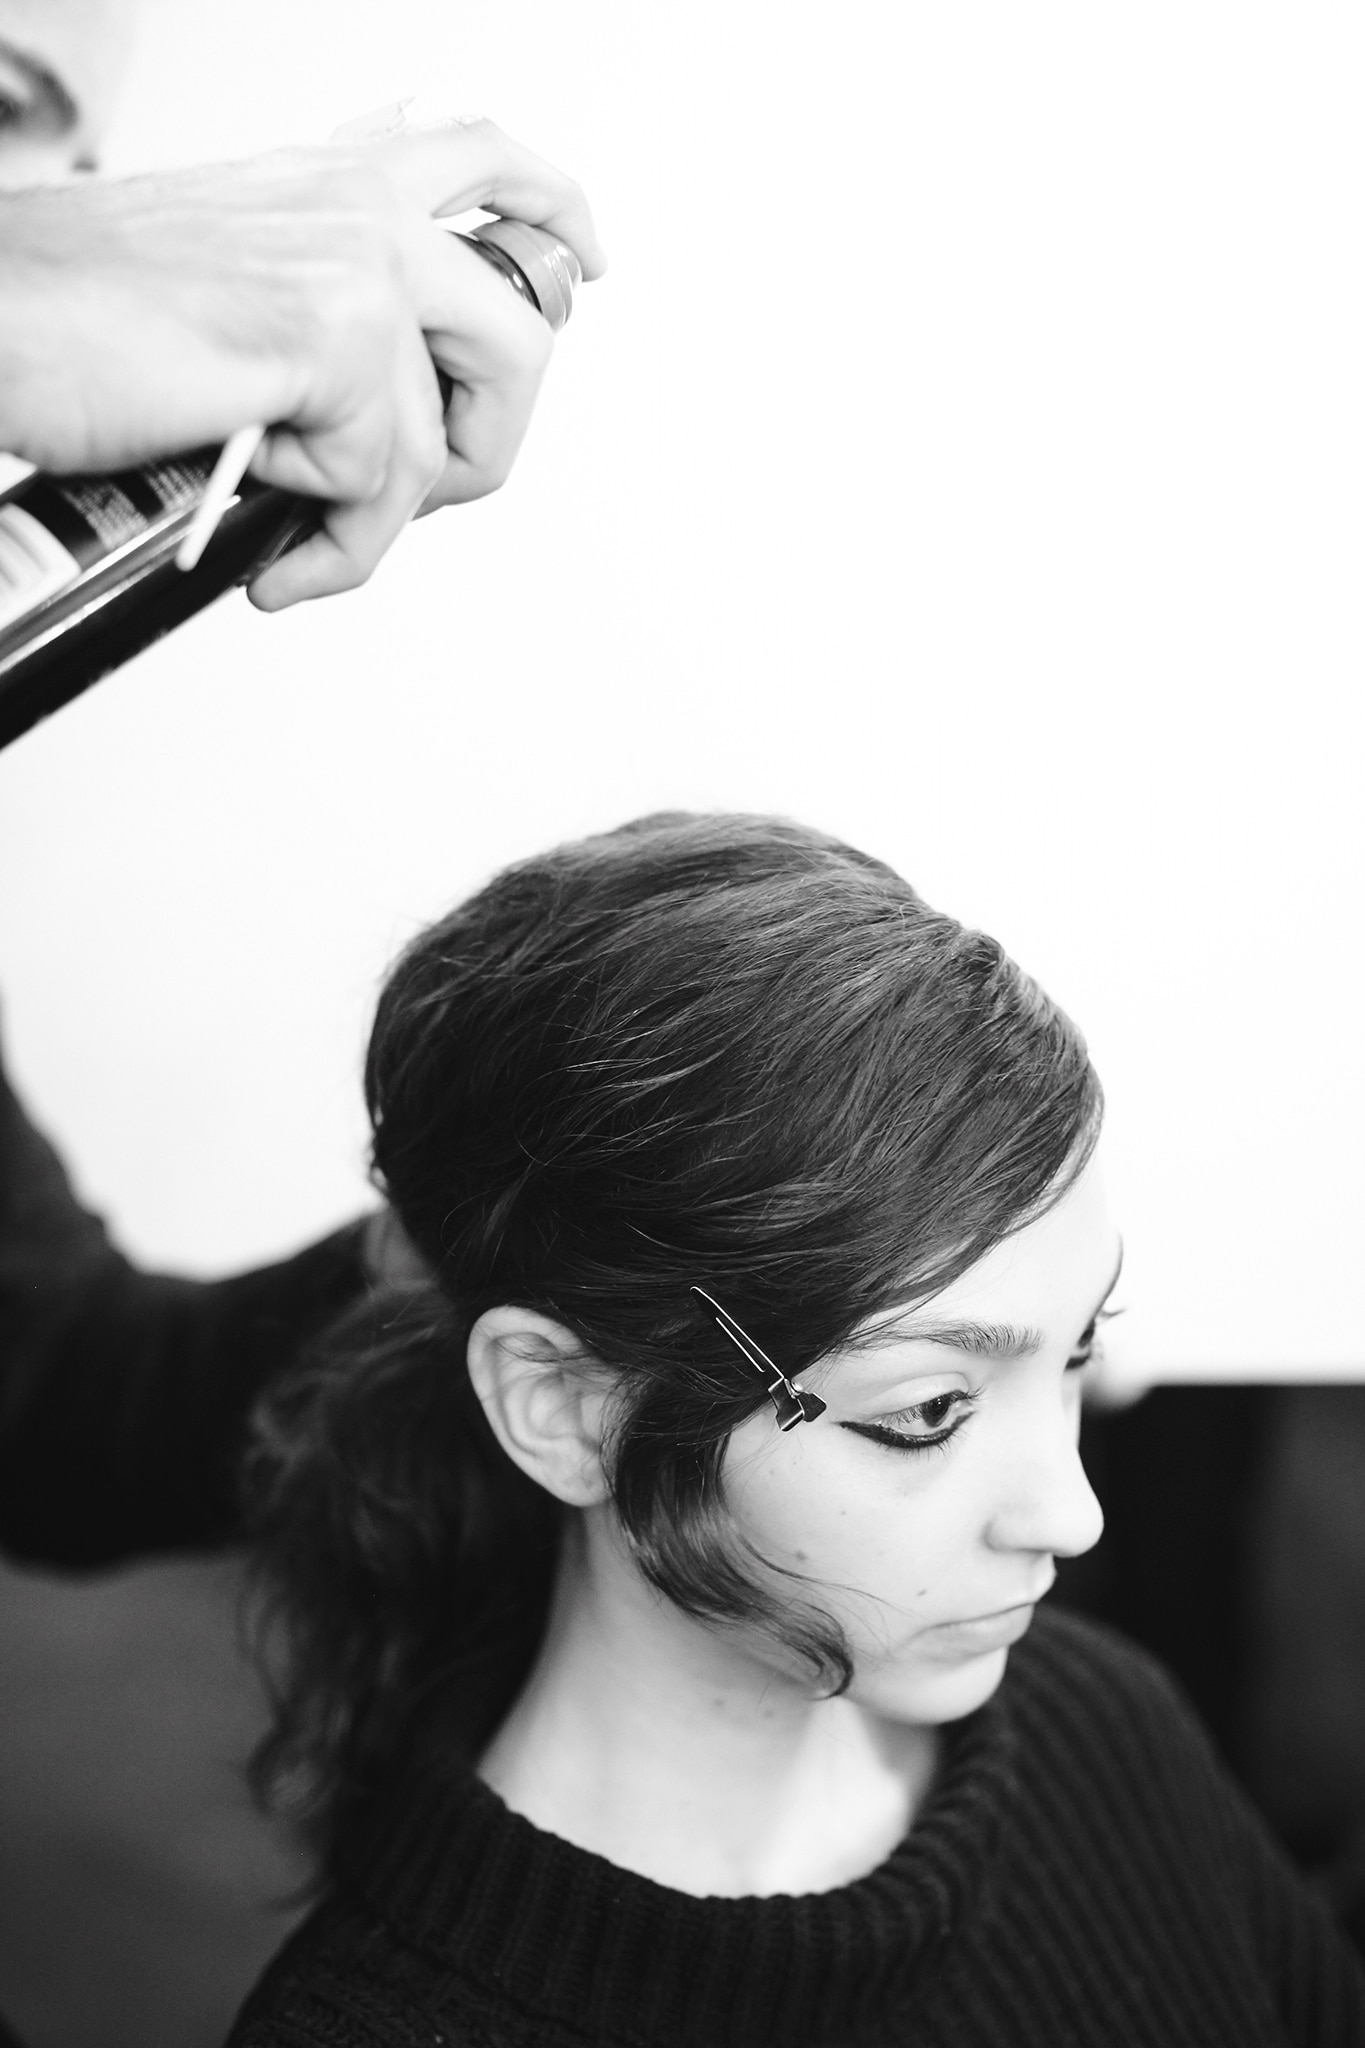 Uma modelo com cabelos escuros e compridos, com um rímel marcante nos olhos e um cabeleireiro aplicando spray para cabelo.  